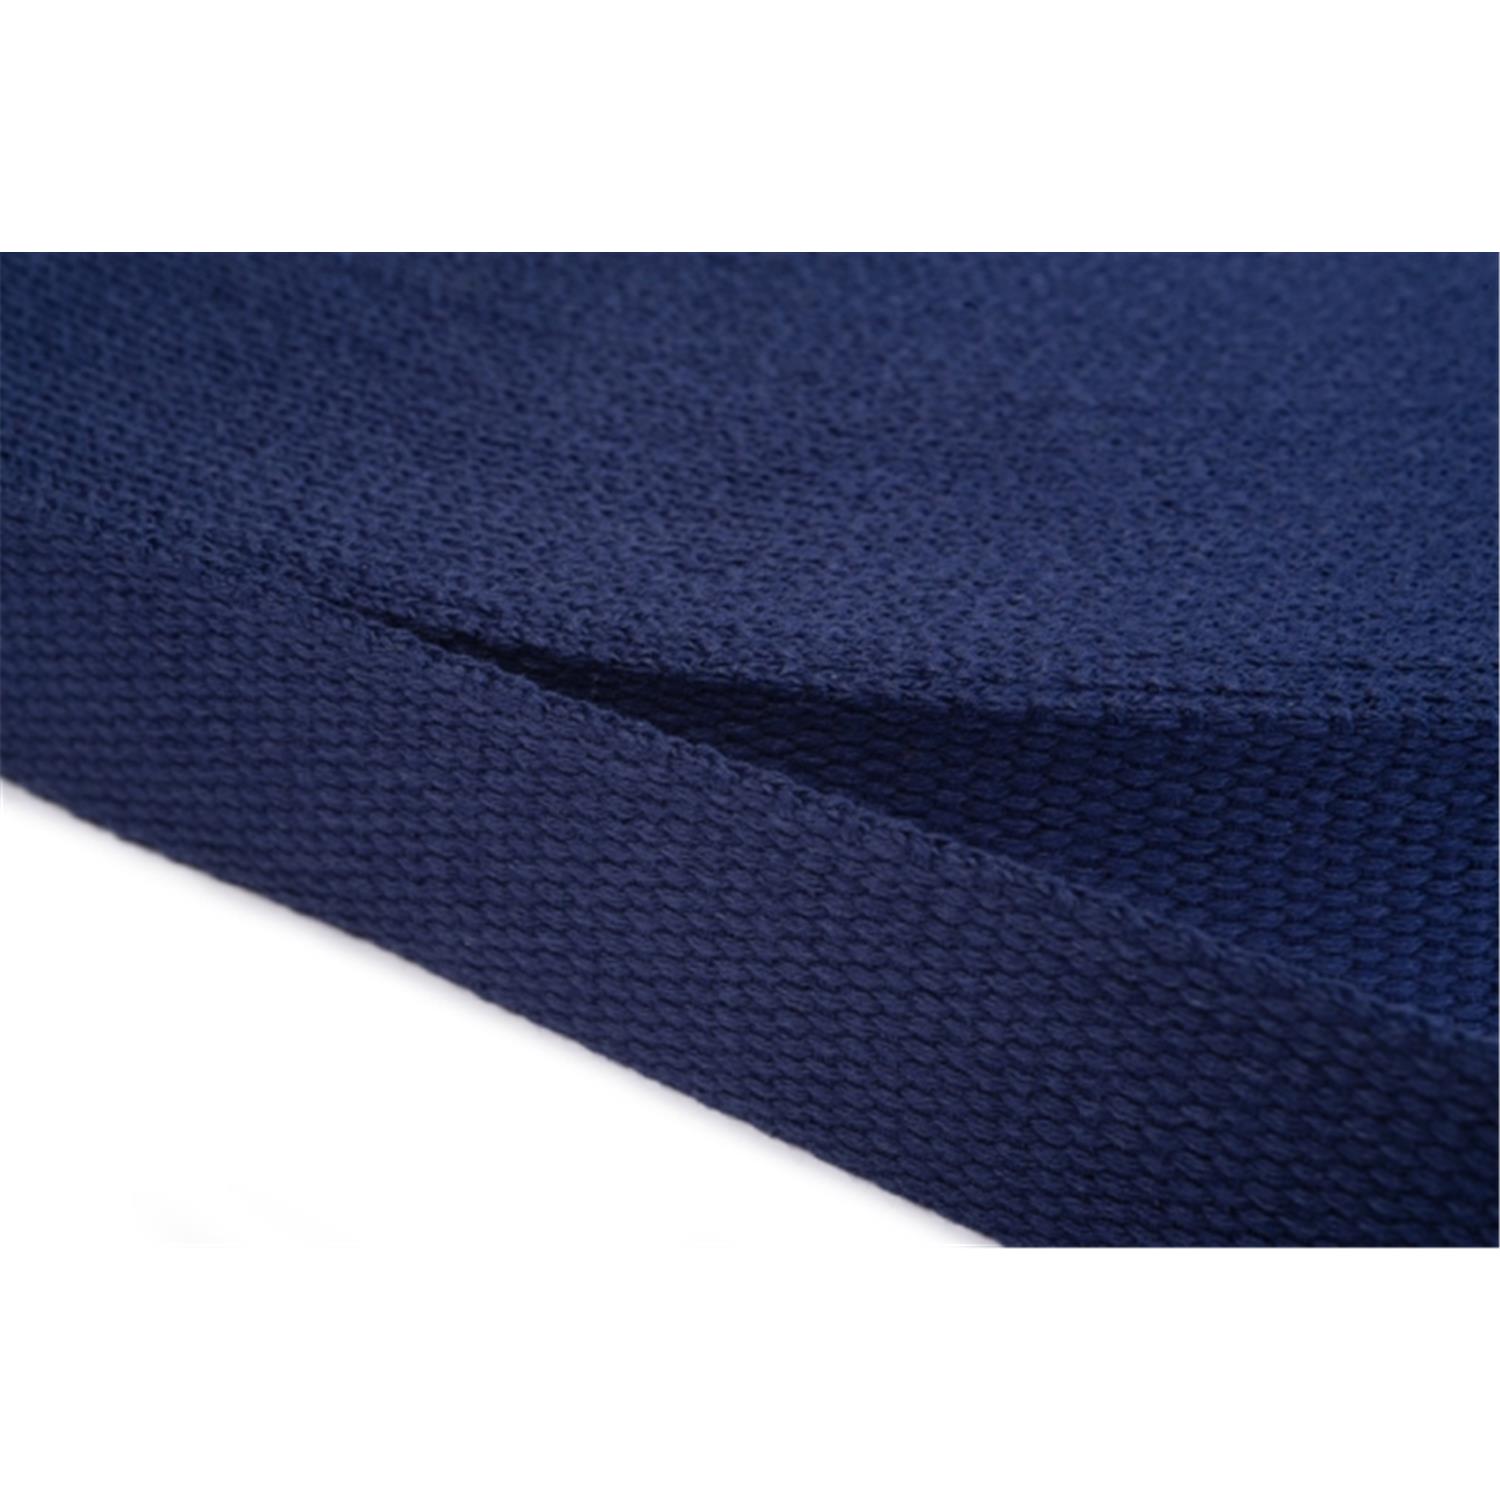 Gurtband aus Baumwolle 30mm in 20 Farben 13 - dunkelblau 6 Meter